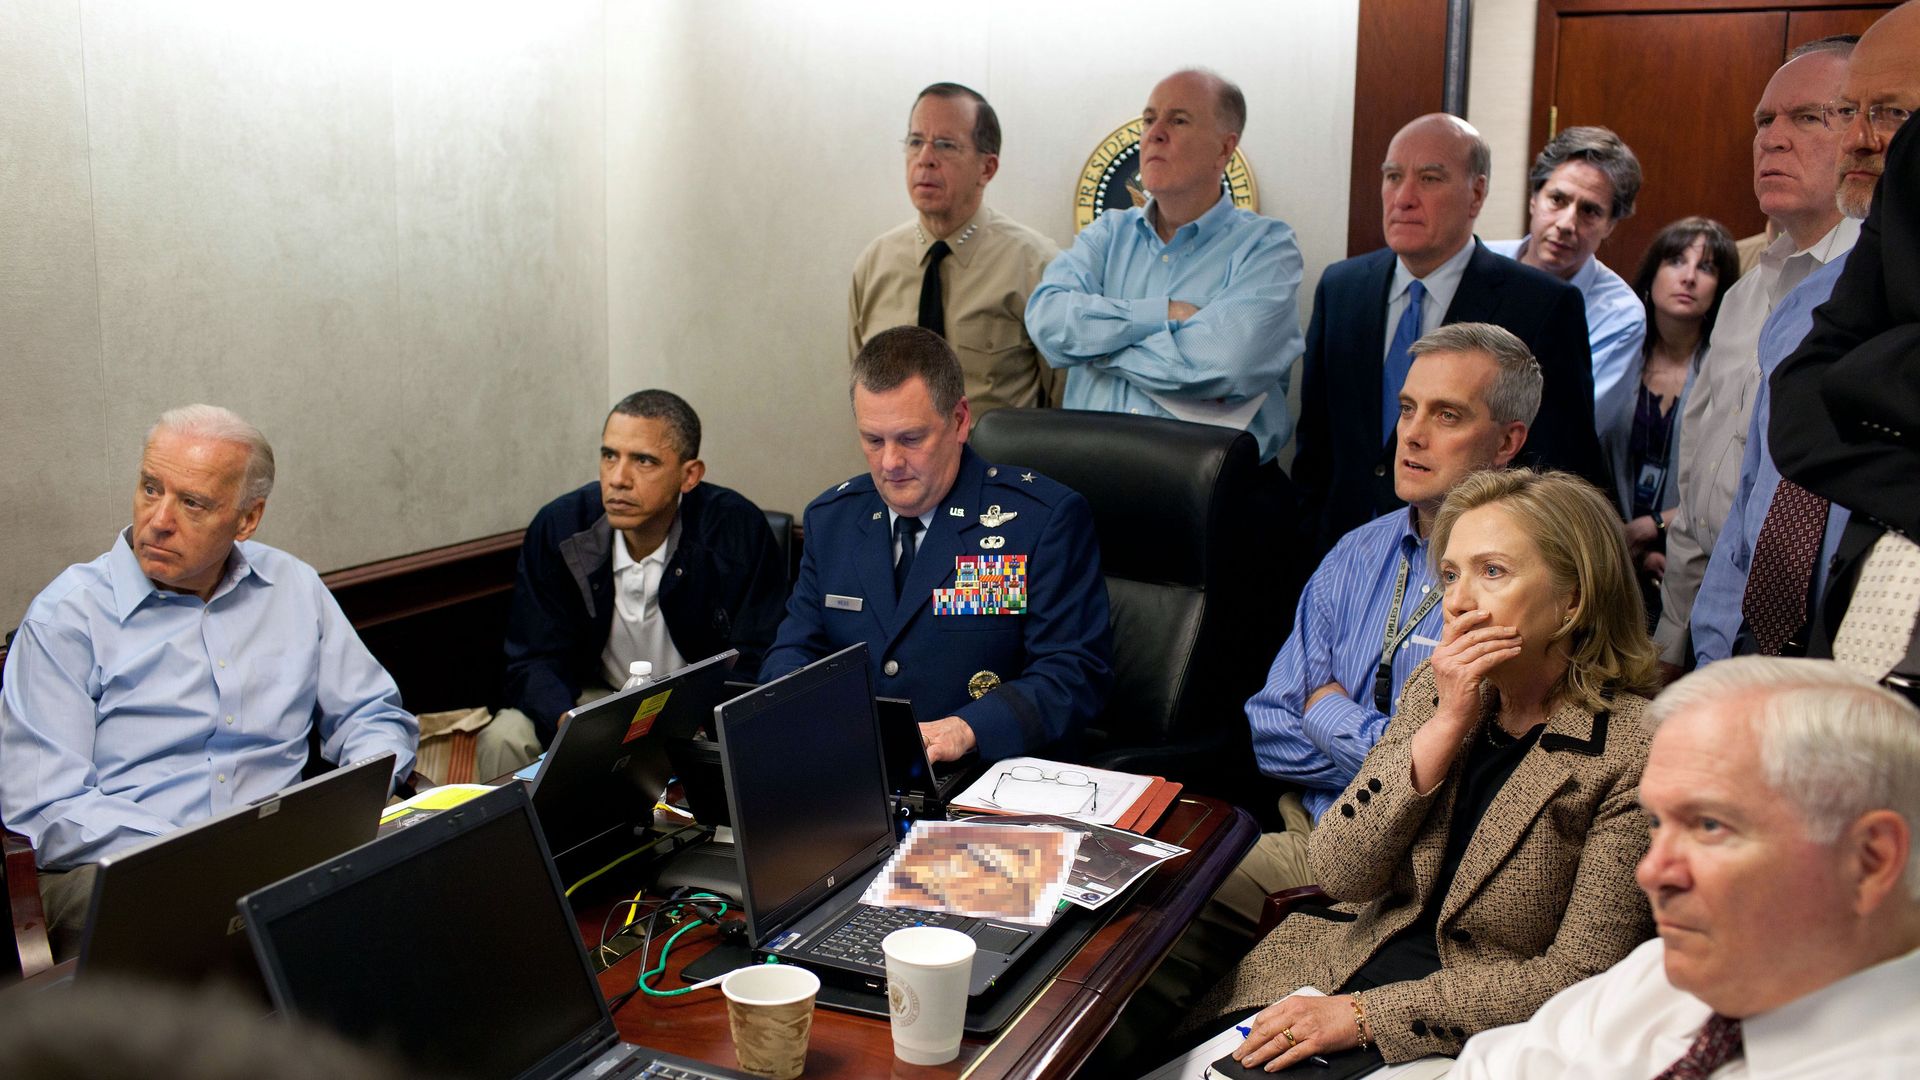 President Obama during Osama raid